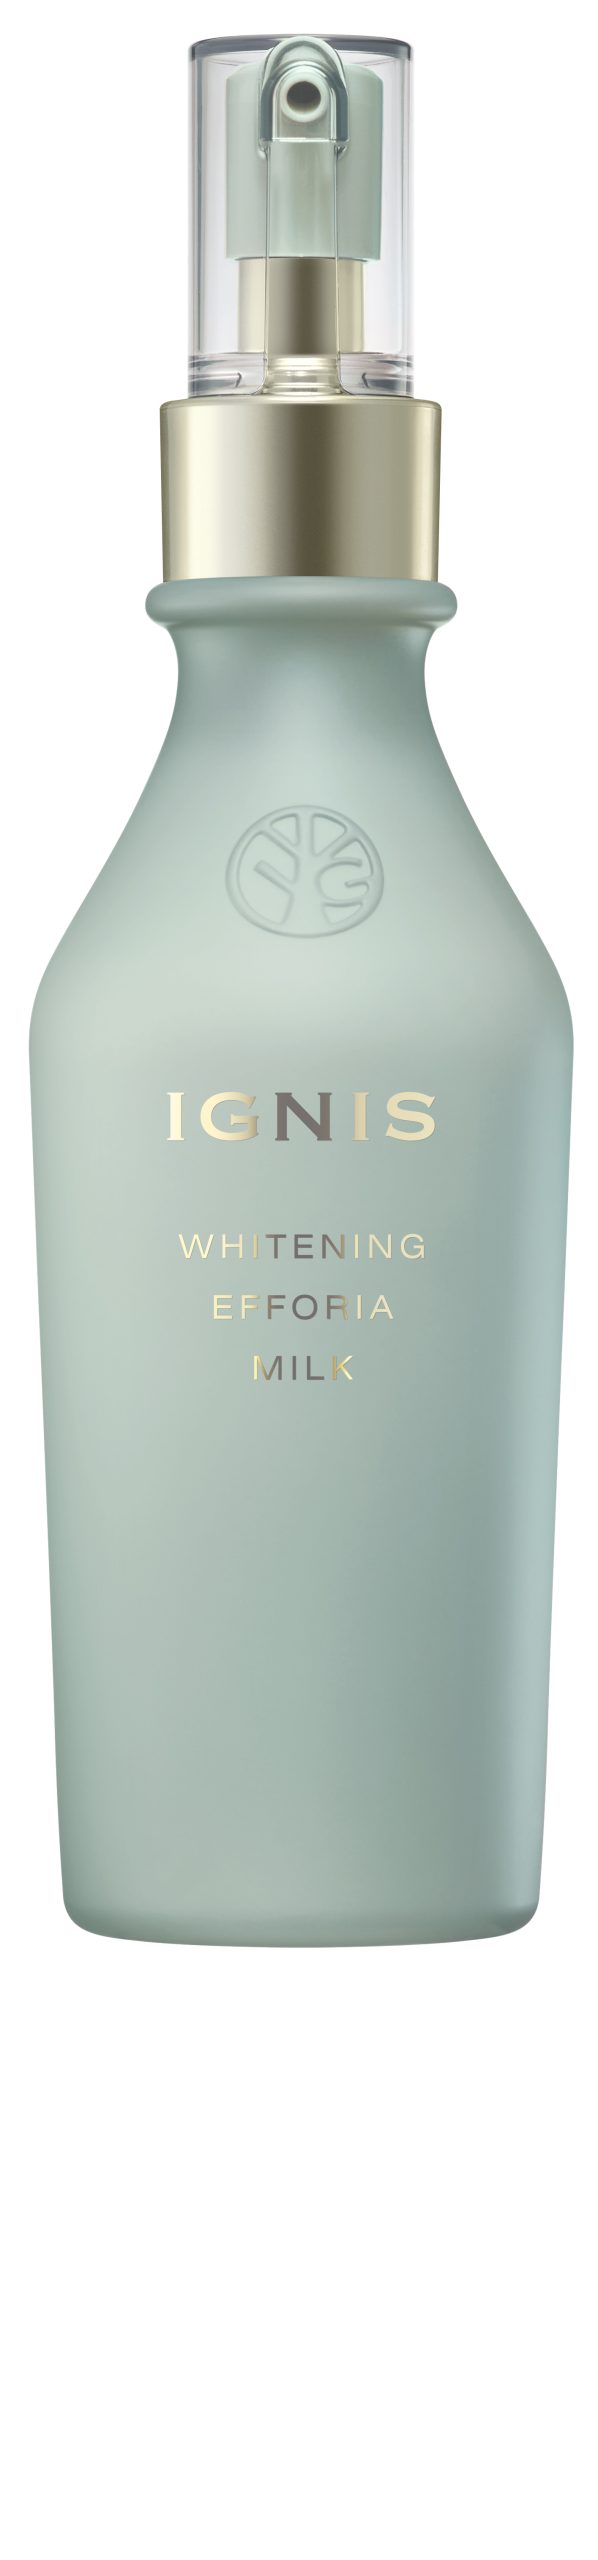 イグニス ホワイトニングエフフォーリア ミルク 200g - 基礎化粧品